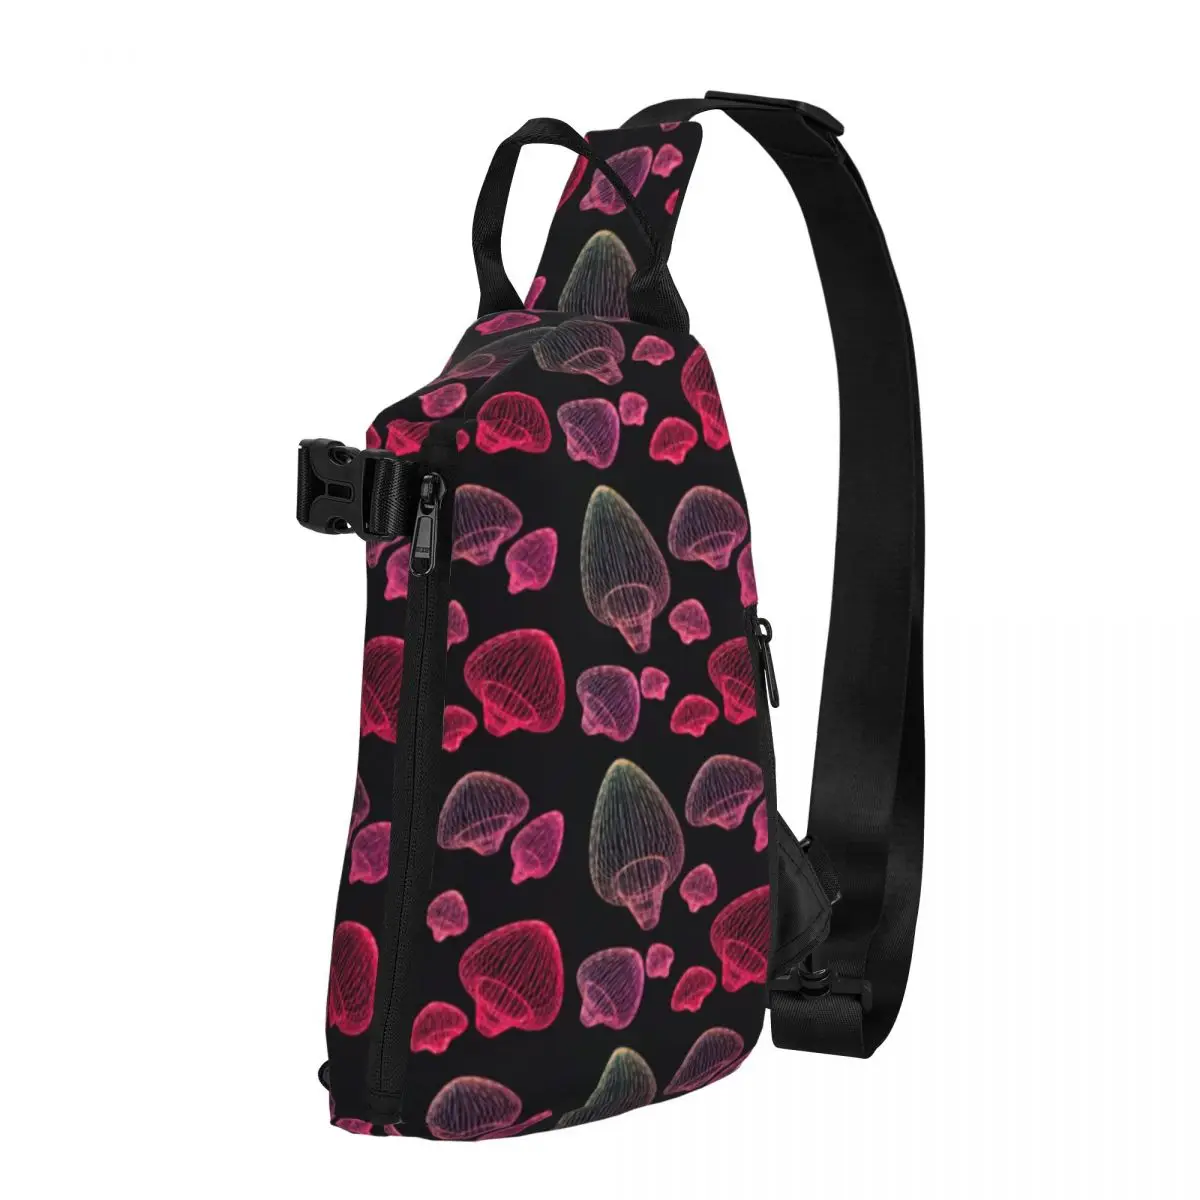 

Нагрудные сумки с волшебными грибами для женщин, Спортивная Сумочка на плечо с принтом грибов розового цвета, уличные сумки-слинги через плечо для телефона в стиле ретро